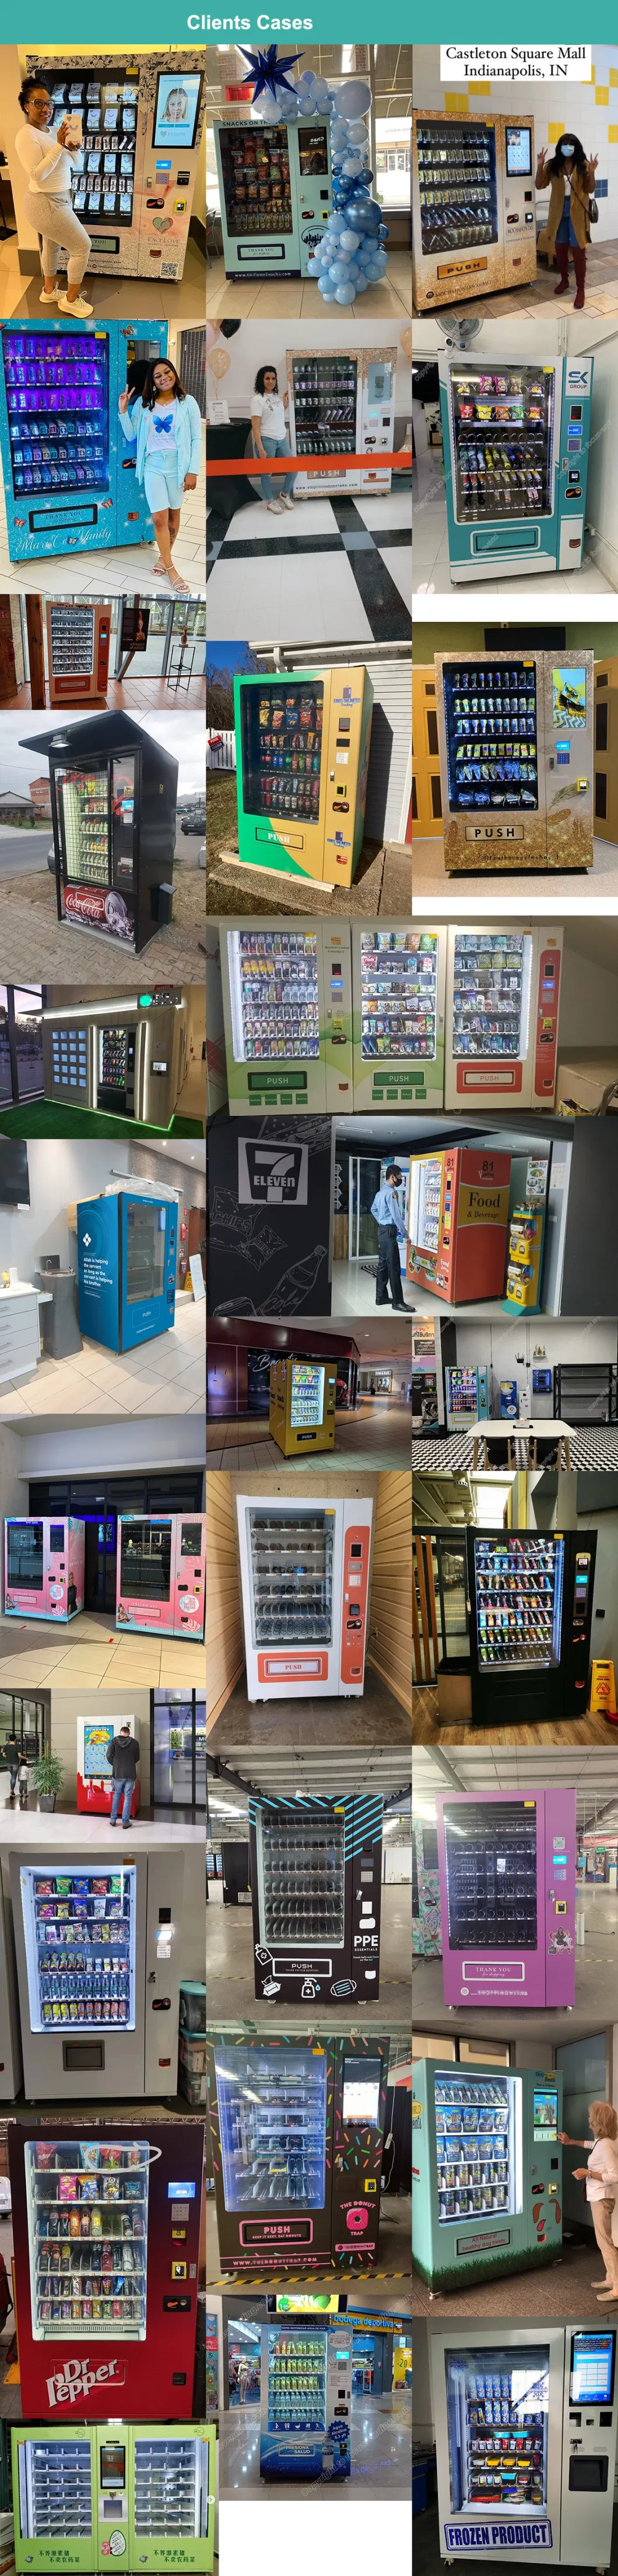 Self Service System Medication Vending Machine for Hospital Selling Medicine